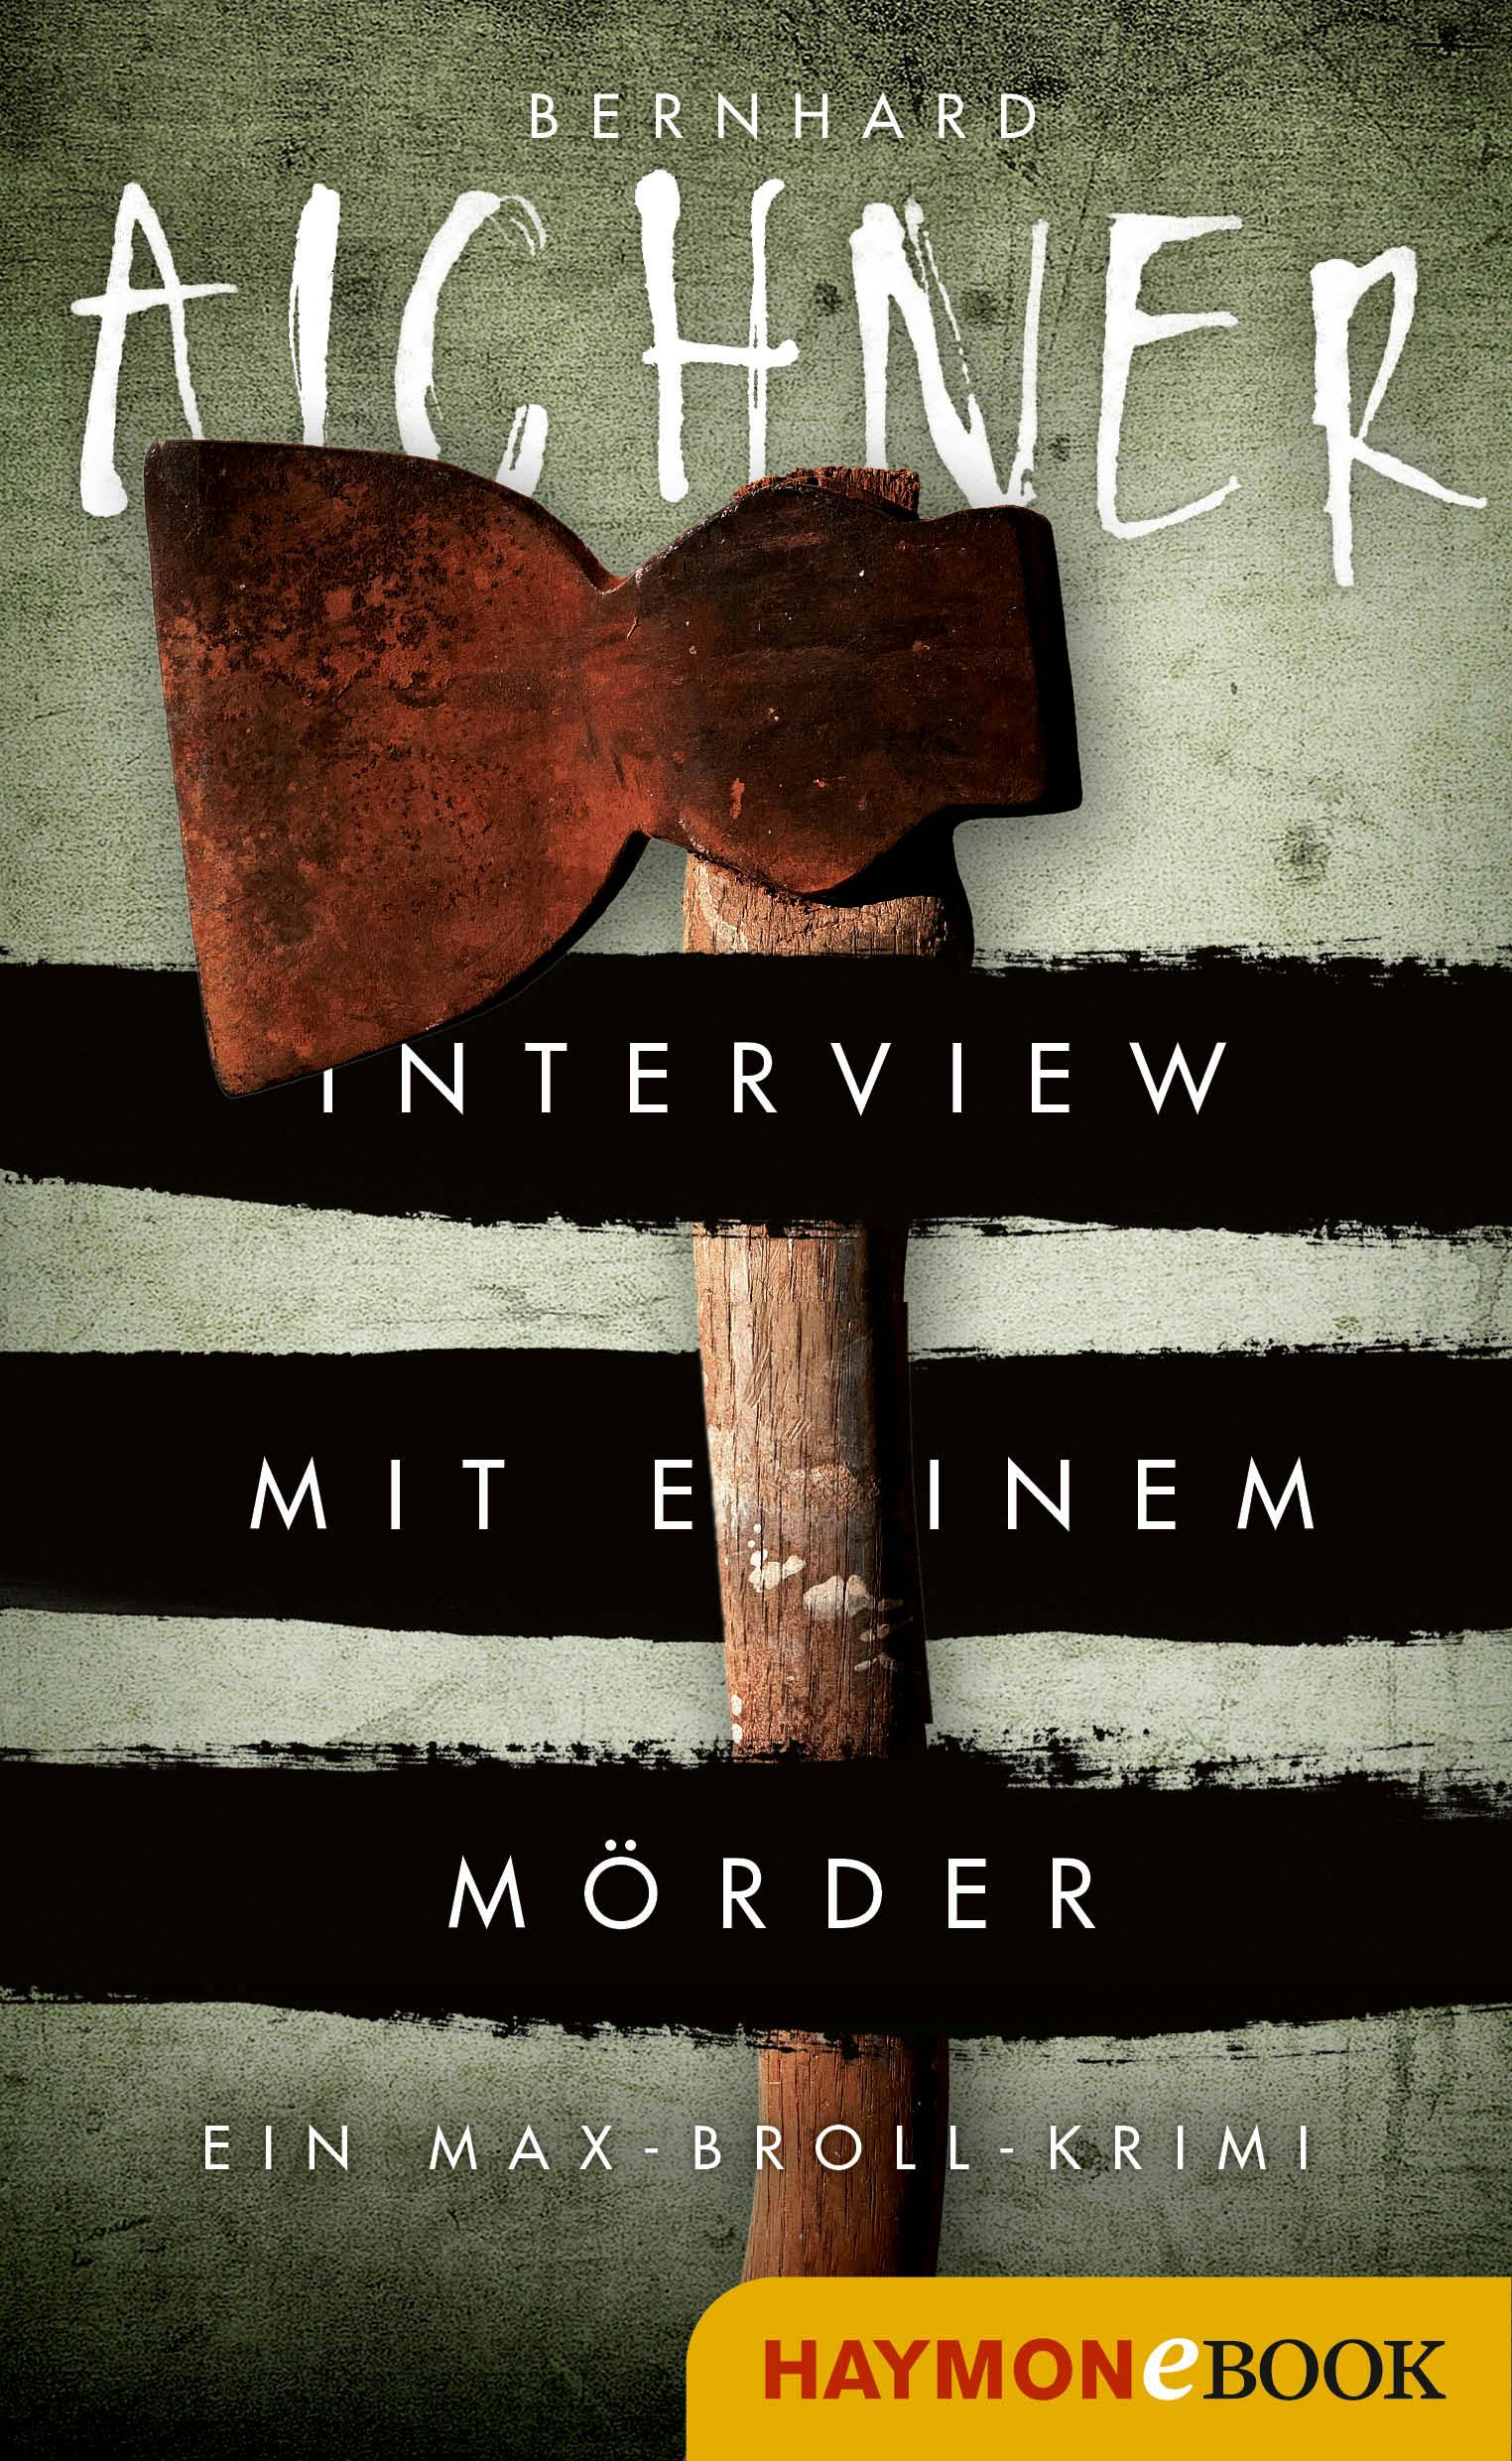 Interview mit einem Mörder: Ein Max-Broll-Krimi - Bernhard Aichner